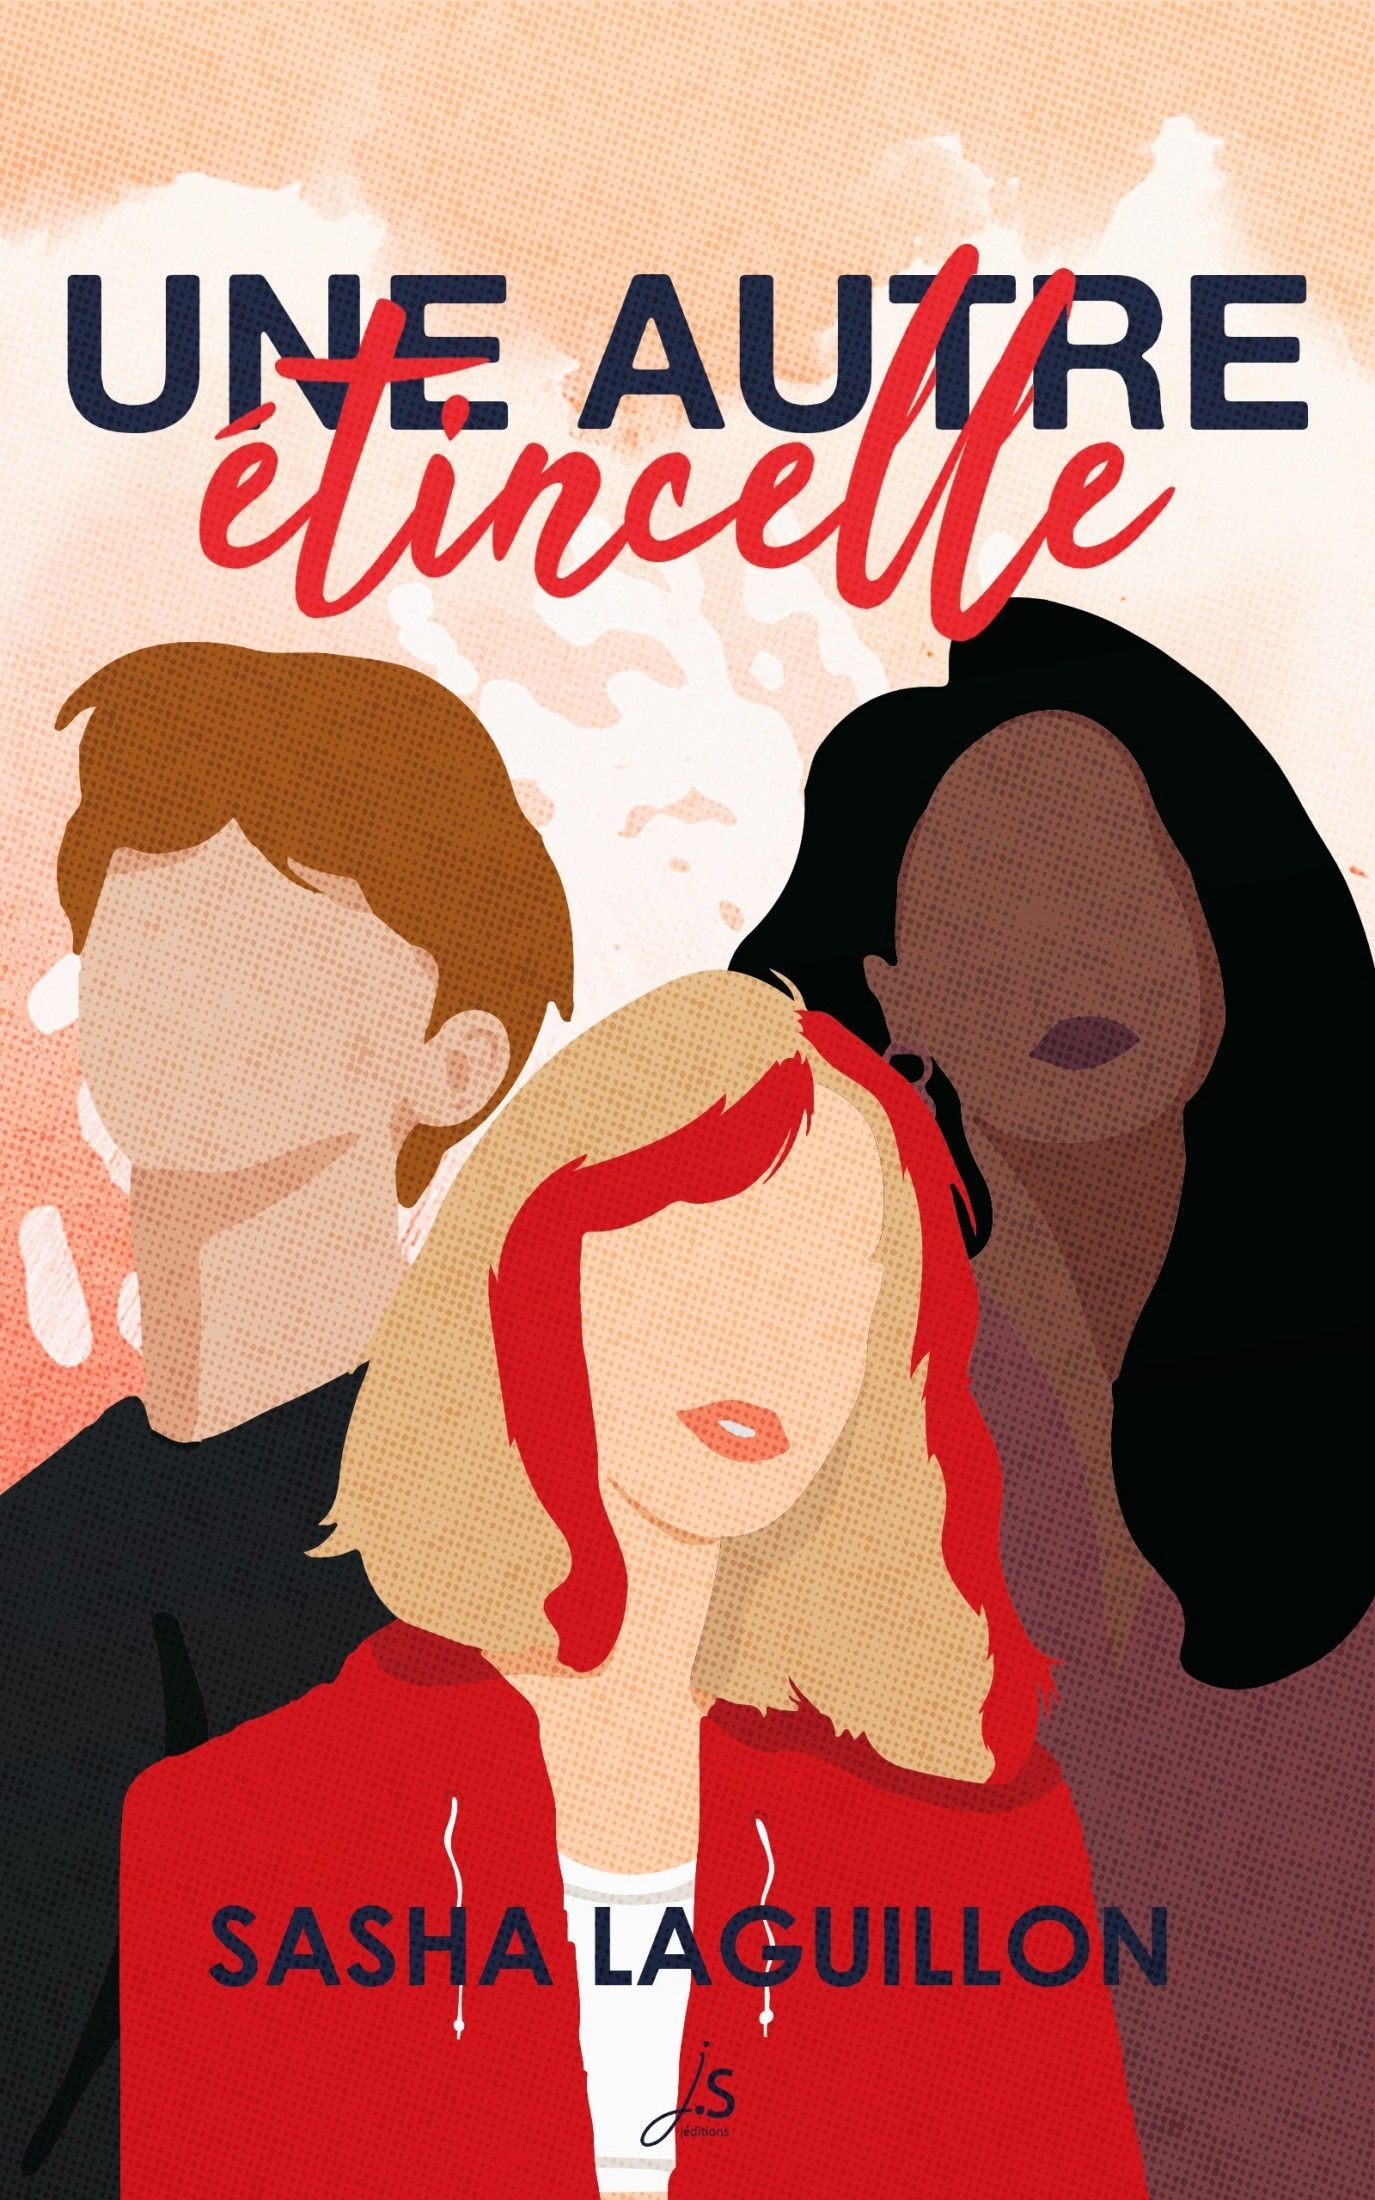 La couverture du roman présente 3 silhouettes humaines. Une jeune personne blanche avec des cheveux blonds et rouges, une personne noire avec de longs cheveux noirs raides et une personne blanche avec de courts cheveux roux.